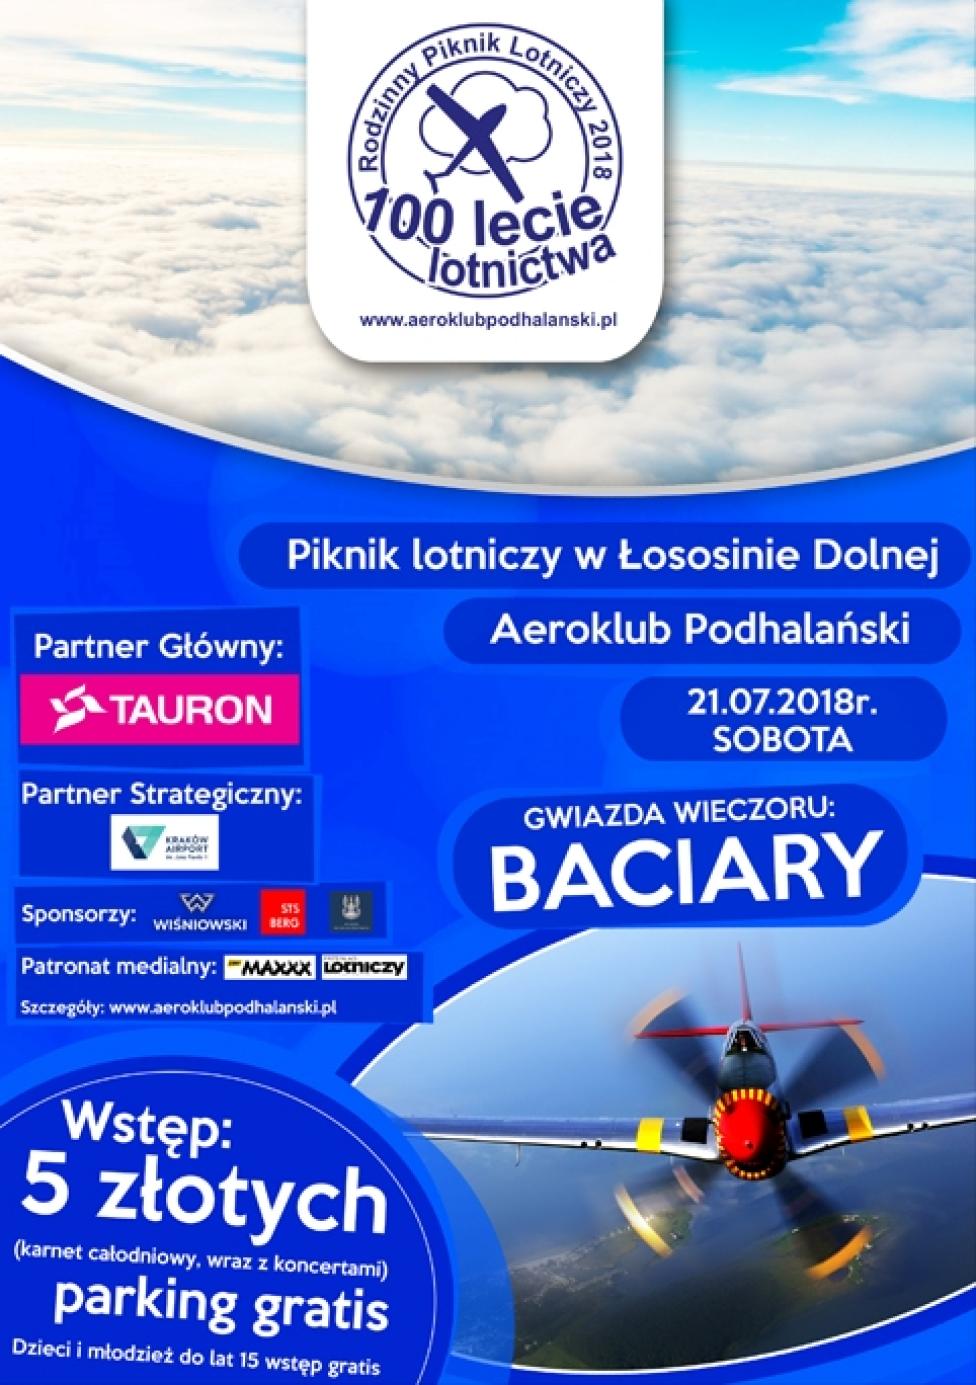 Rodzinny piknik lotniczy na 100-lecie lotnictwa w Łososinie Dolnej (fot. aeroklubpodhalanski.pl)